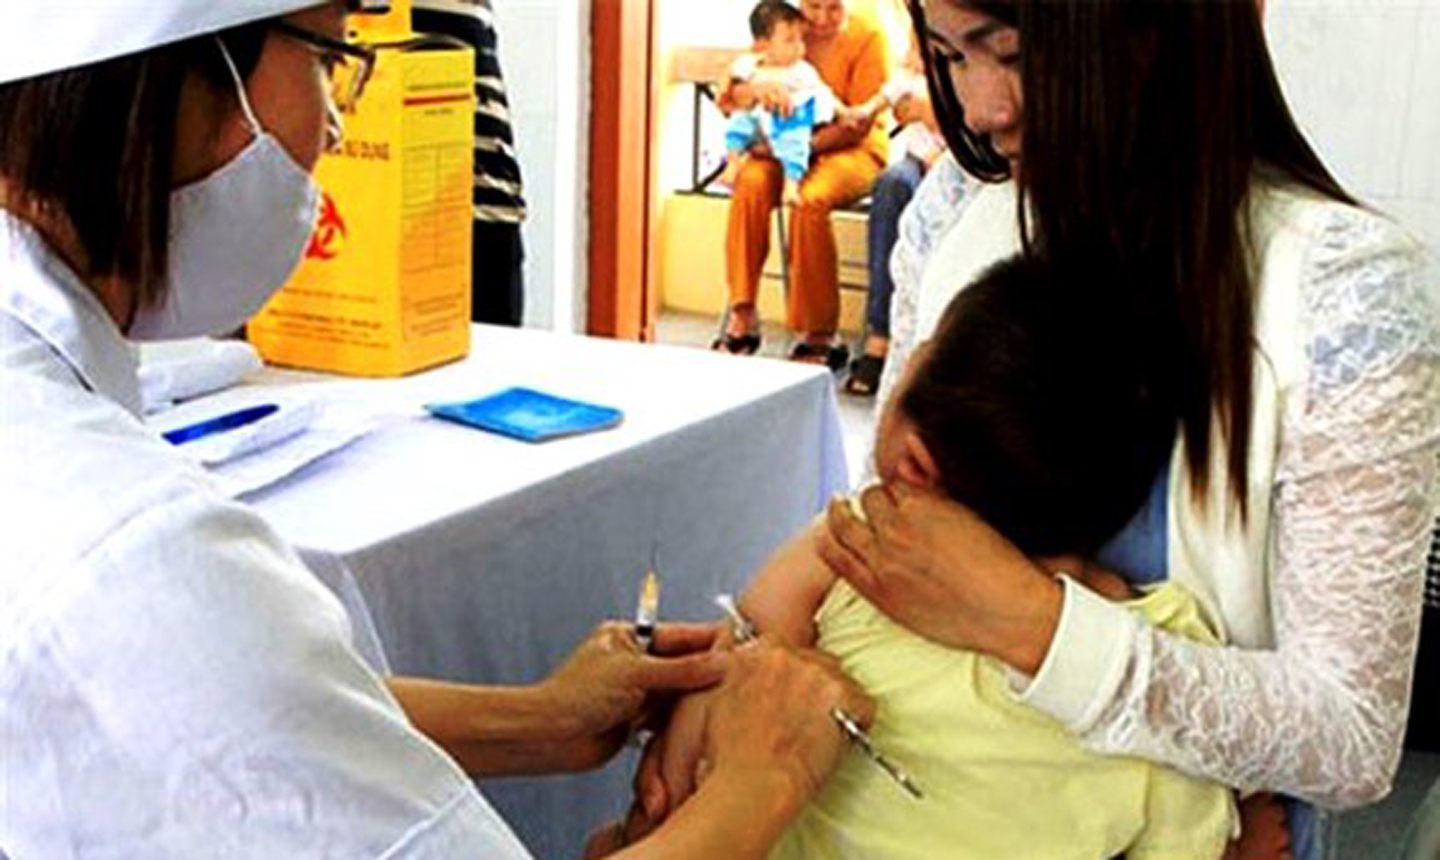 Cần kiểm tra kỹ sức khỏe của trẻ nhỏ trước khi cho trẻ đi tiêm chủng vaccine